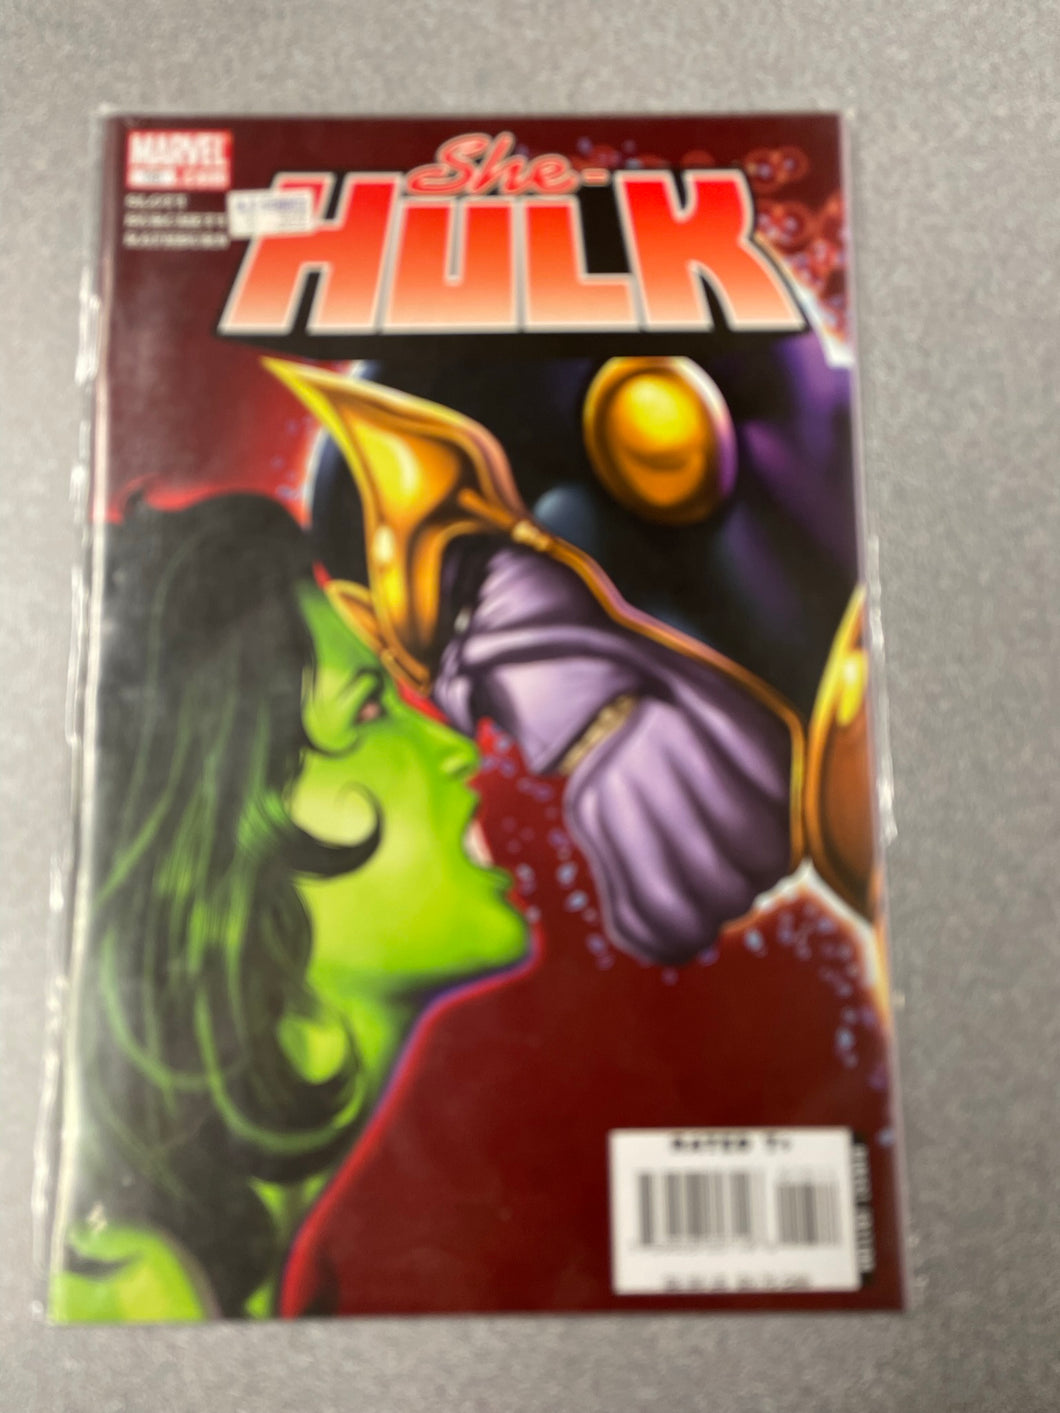 She-Hulk #13, Slot, Dan {2006] GN 1/23